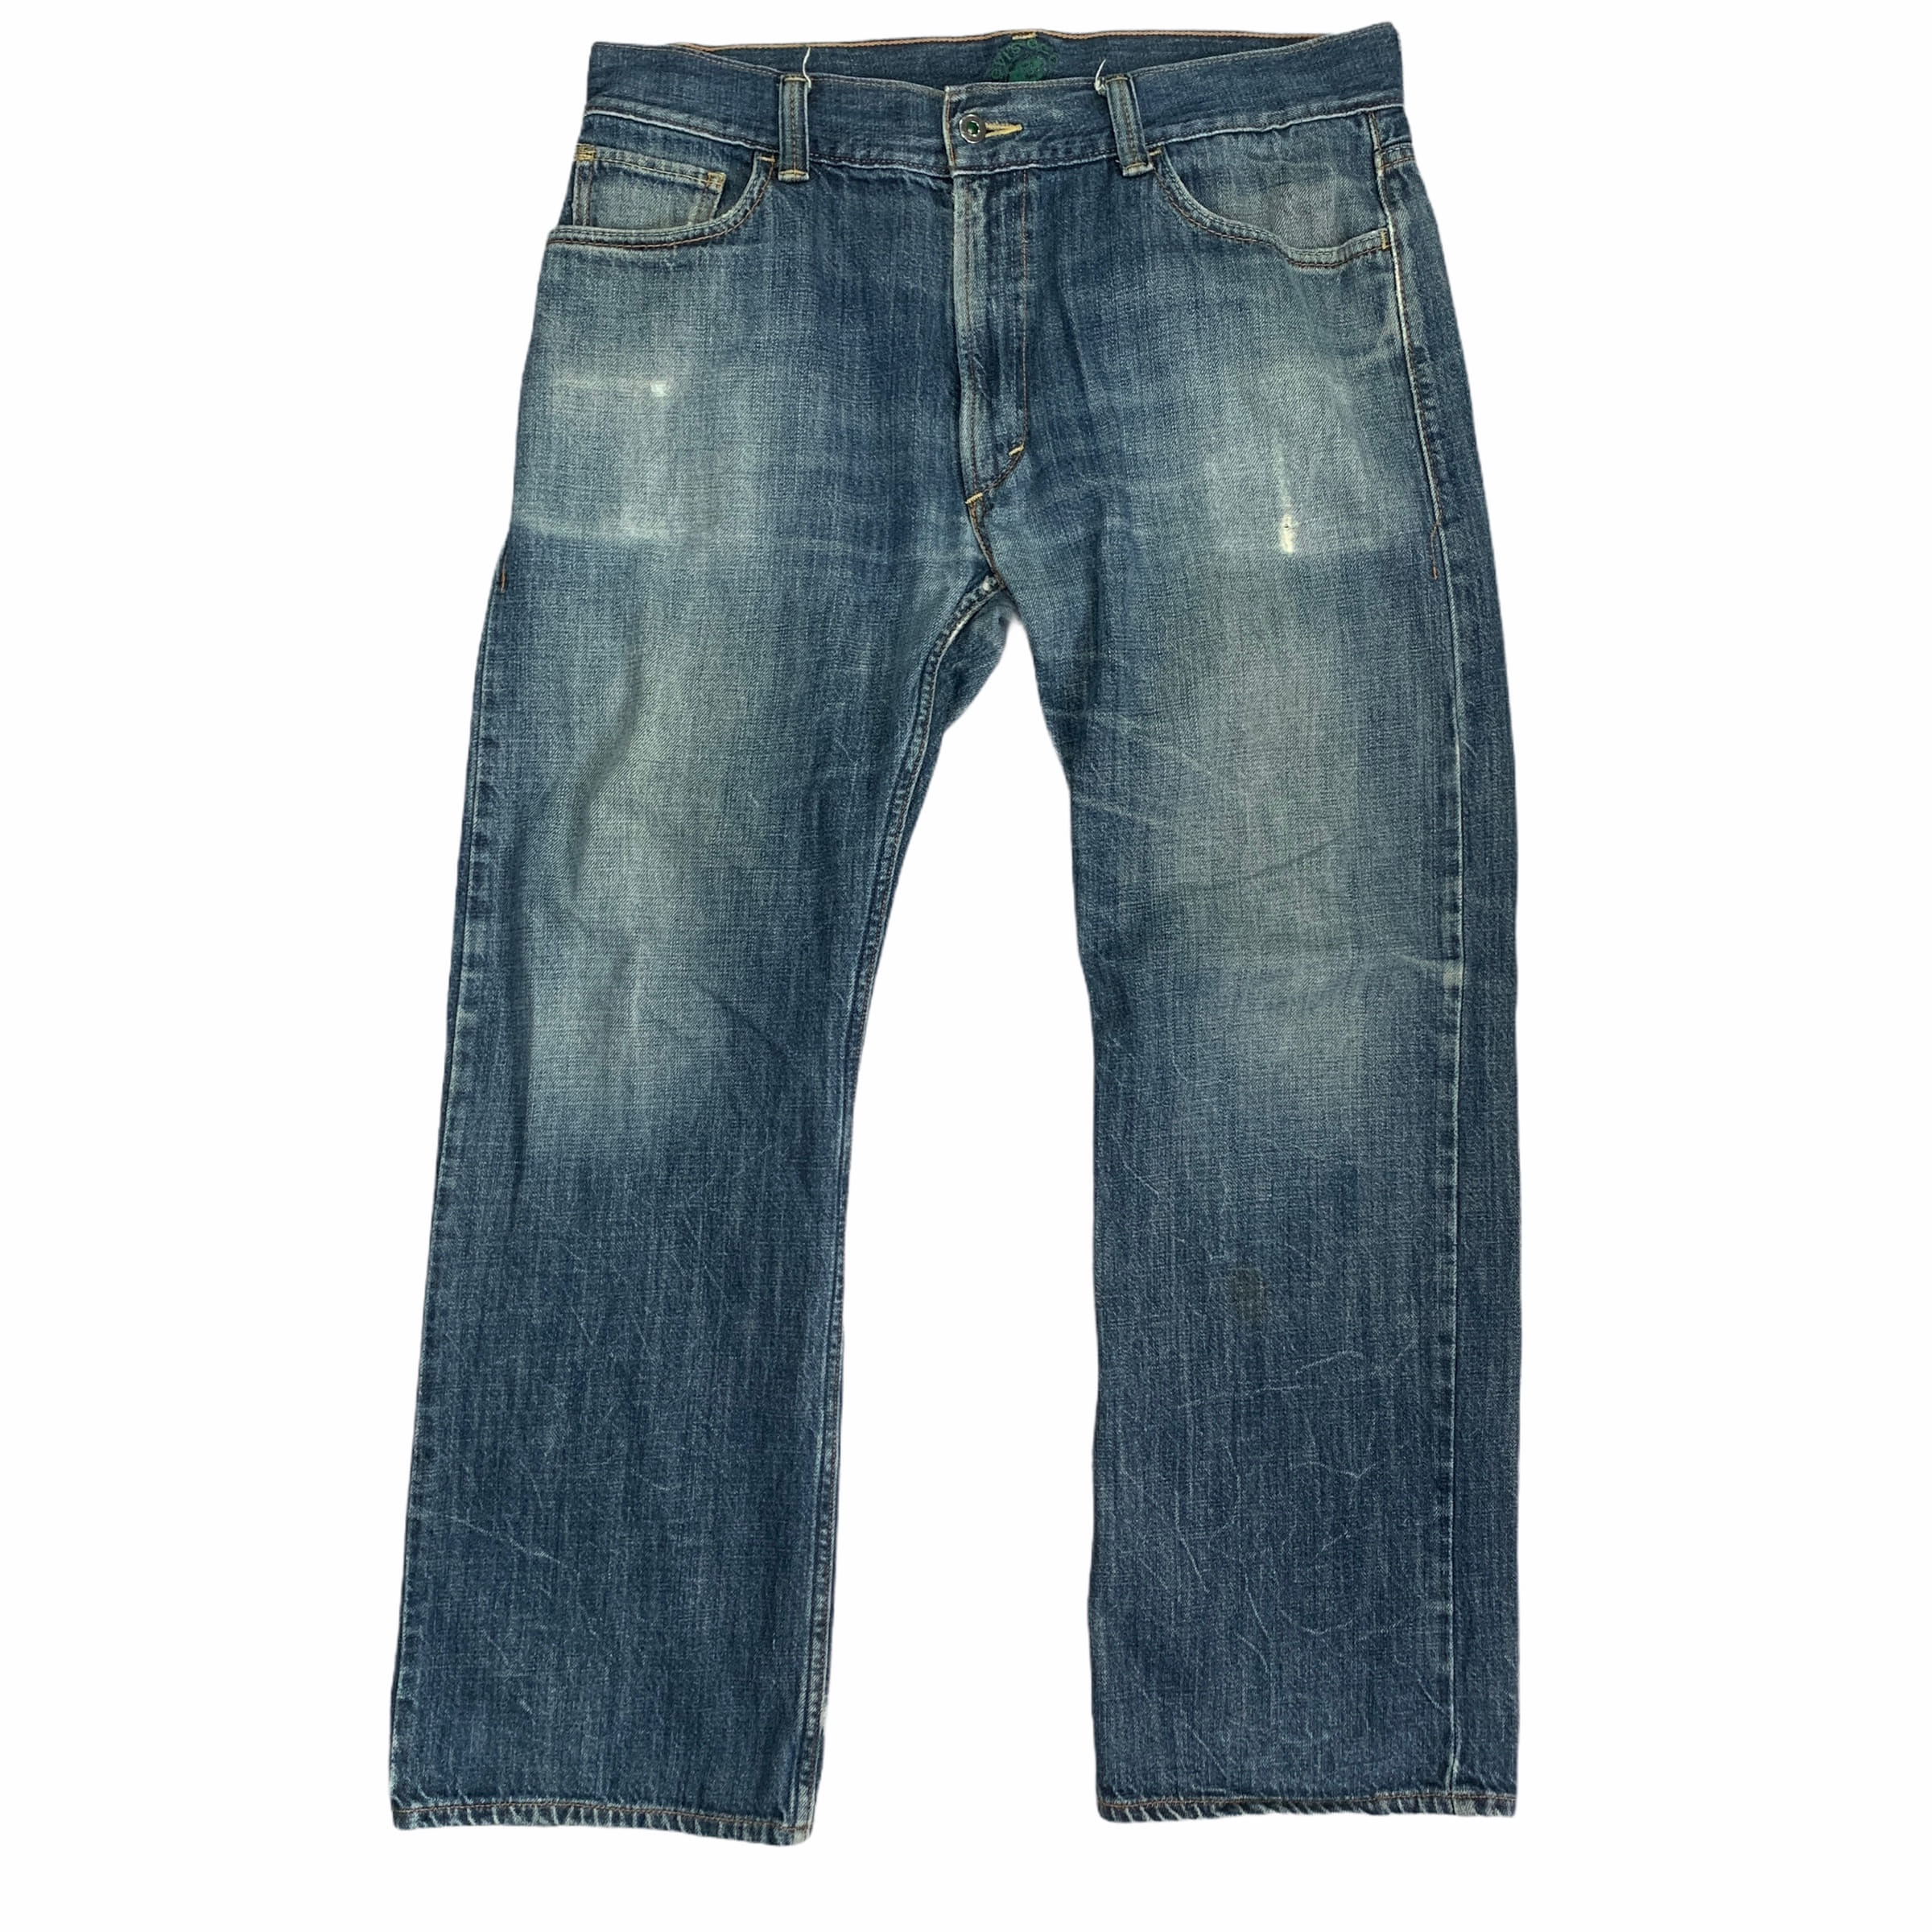 [Levis](Vintage) 539 Straight Denim pants - Size 36/30